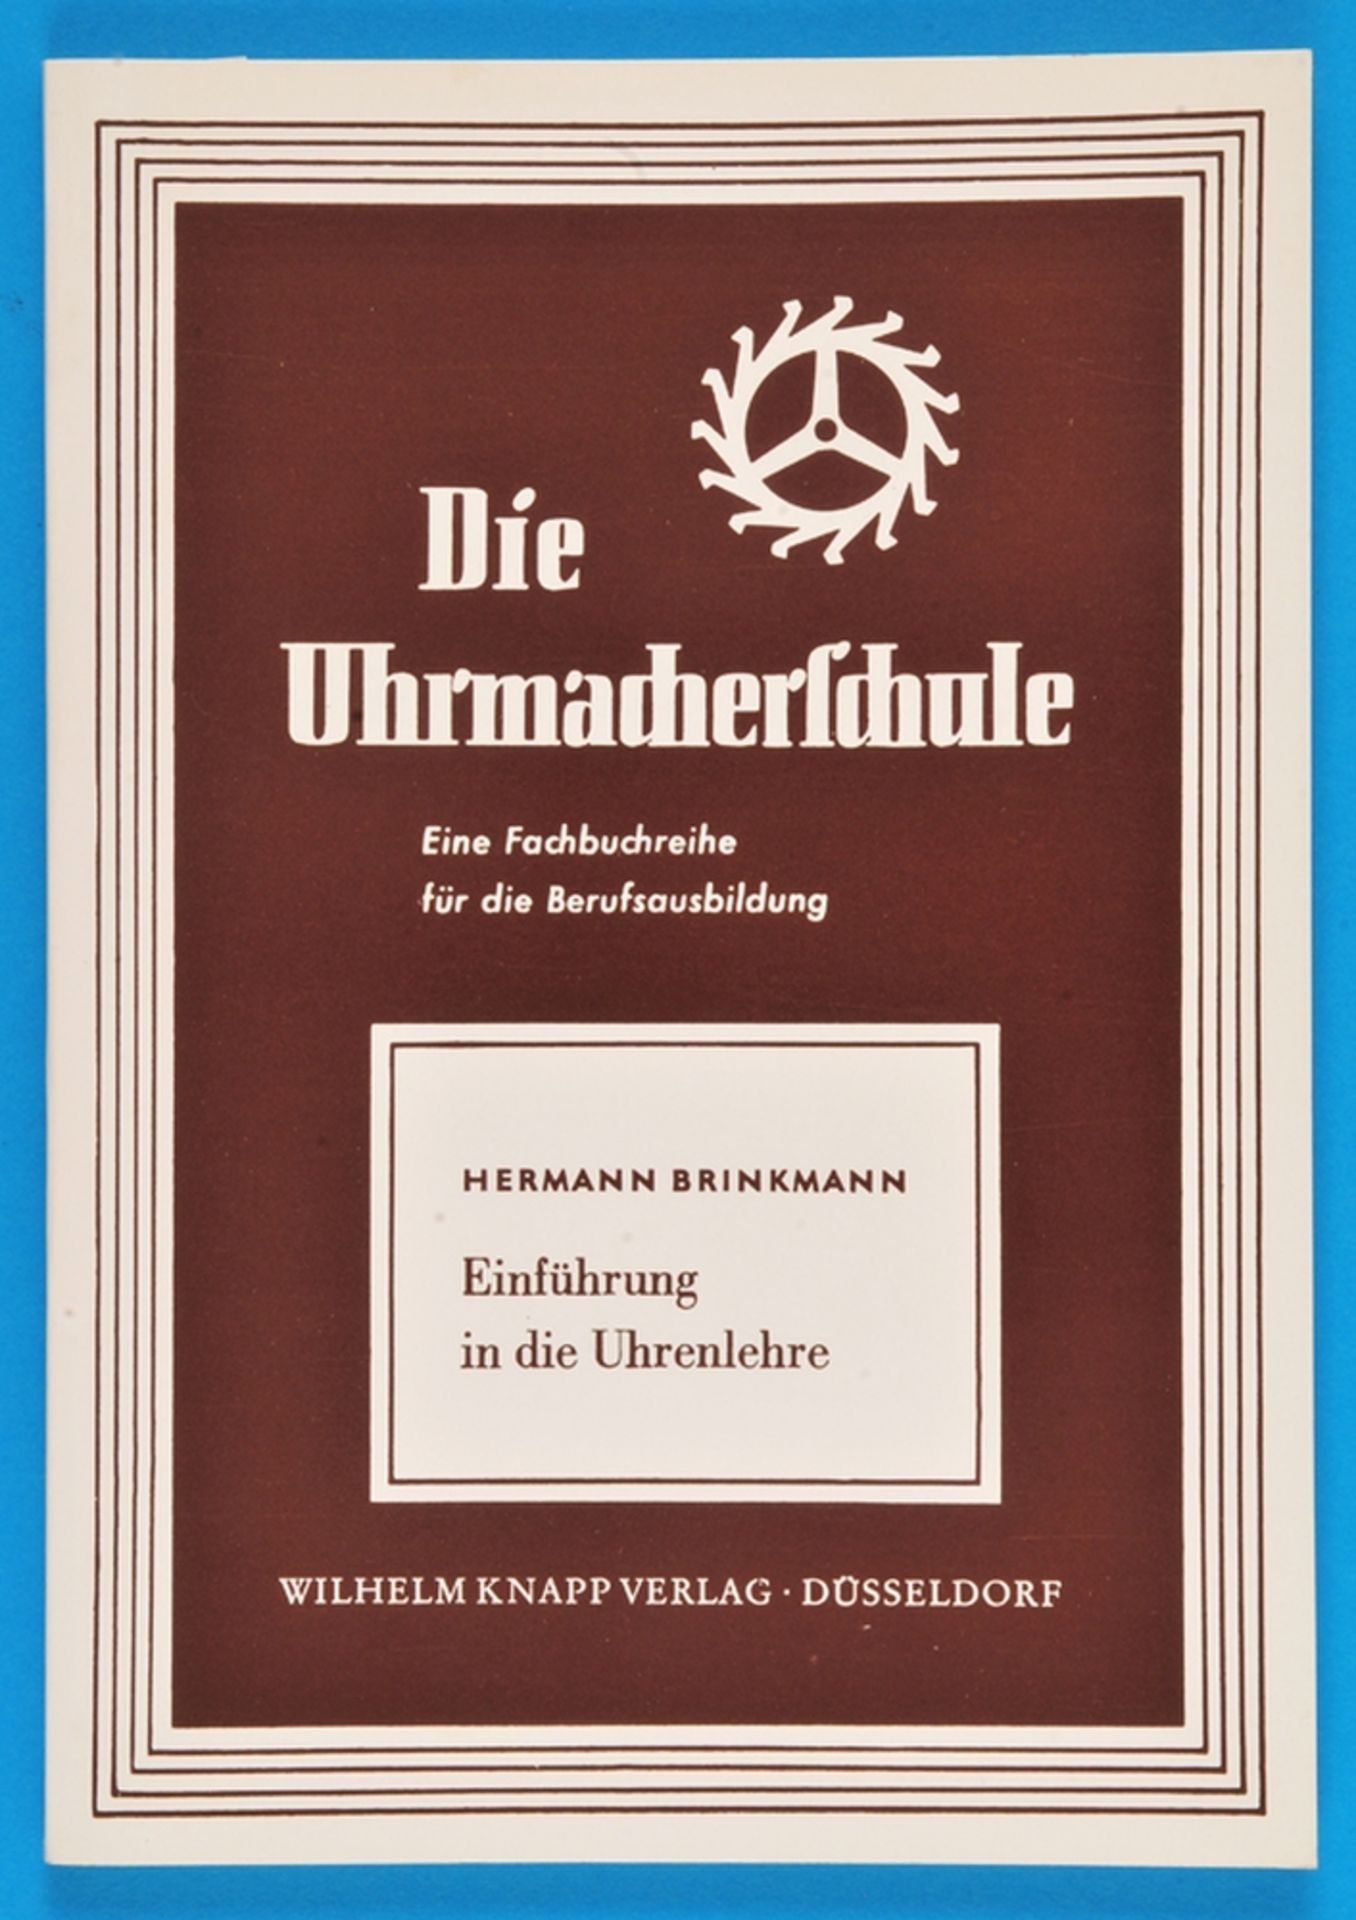 Hermann Brinkmann, Die Uhrmacherschule - Einführung in die Uhrenlehre